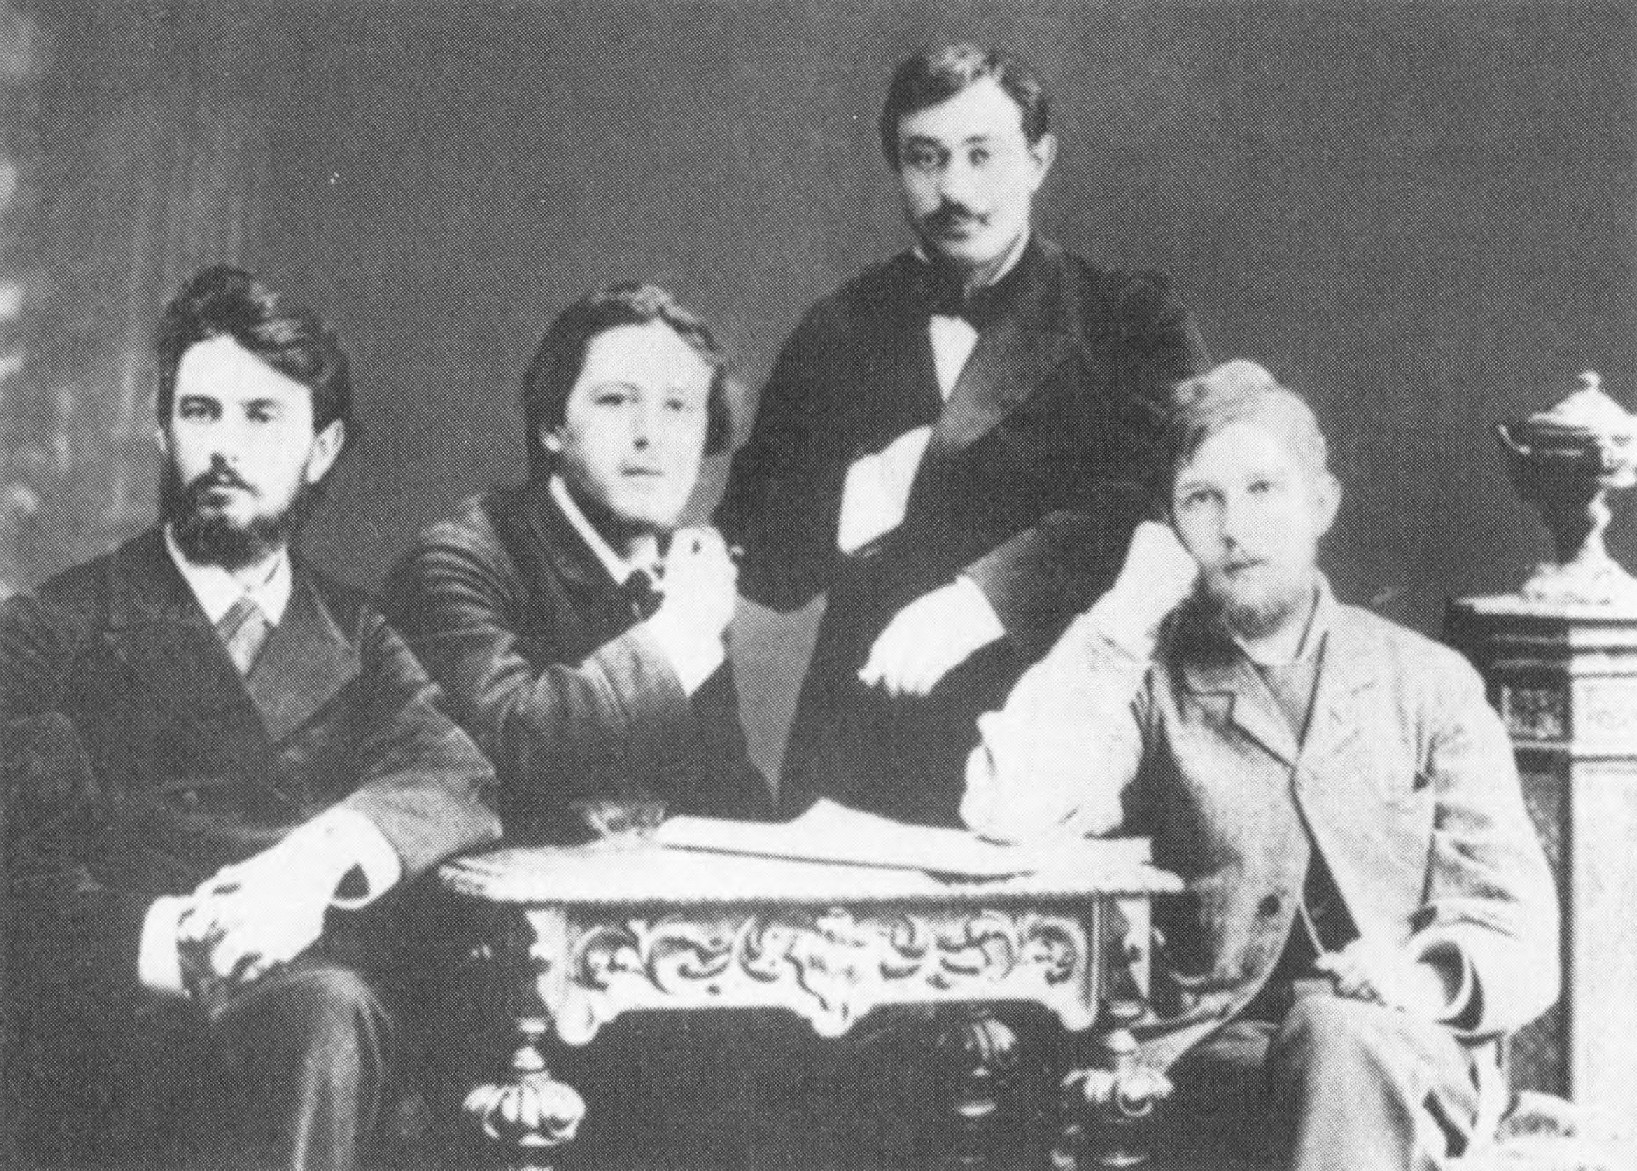 Студенты медицинского факультета Московского университета. Чехов — второй слева. Фото 1883 г.